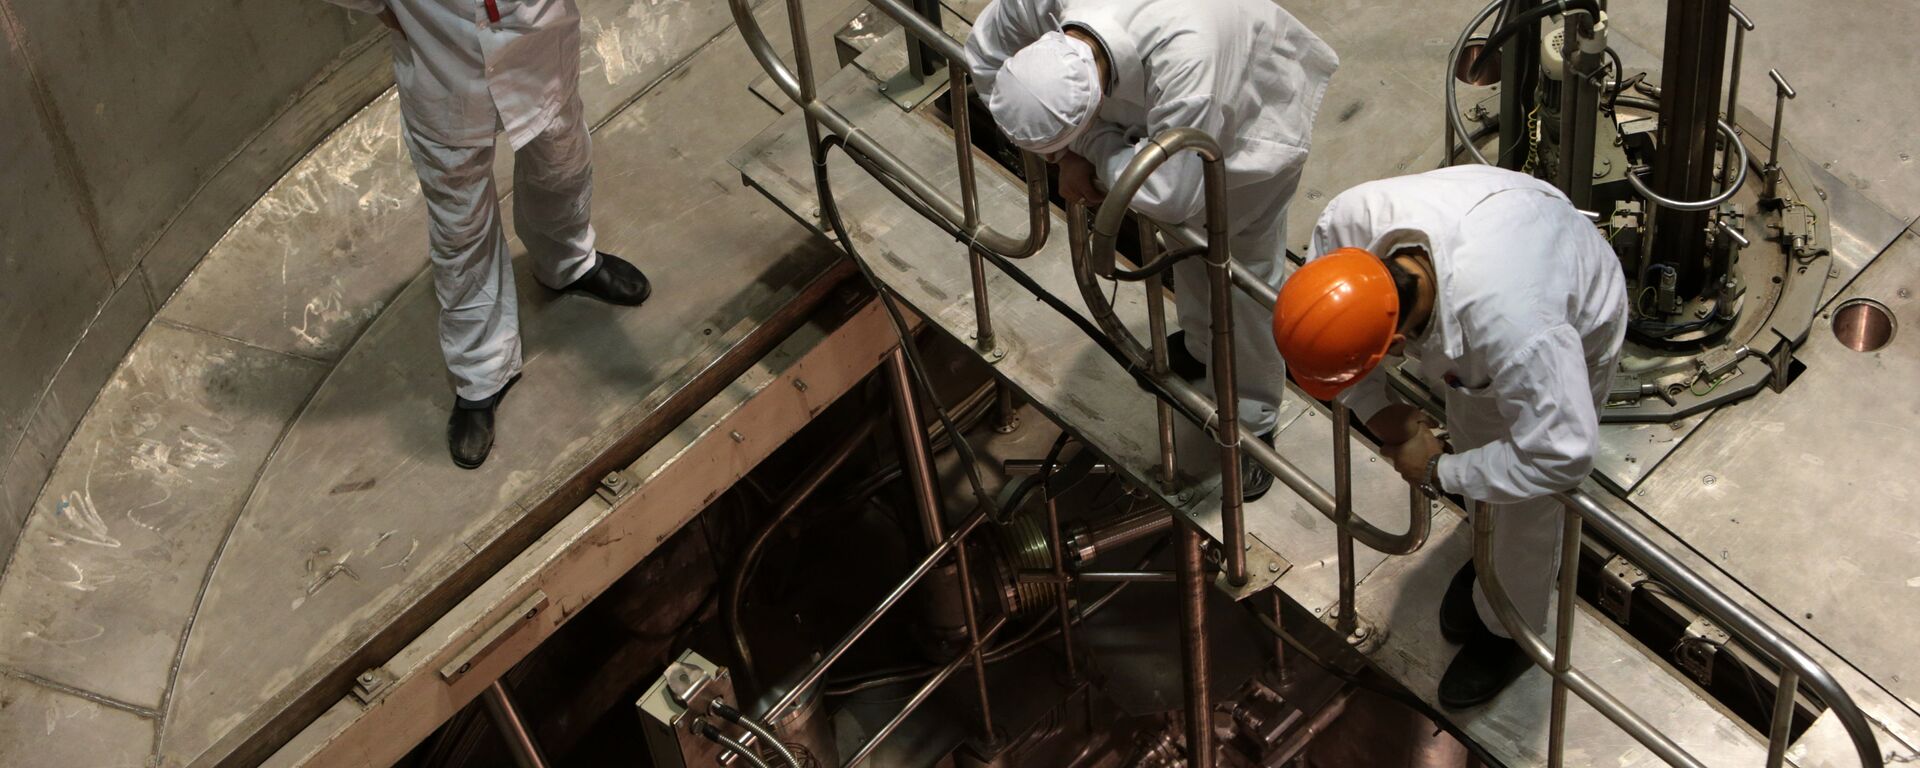 Сотрудники научно-исследовательского центра стоят у шахты реактора, архивное фото - Sputnik Таджикистан, 1920, 20.03.2020